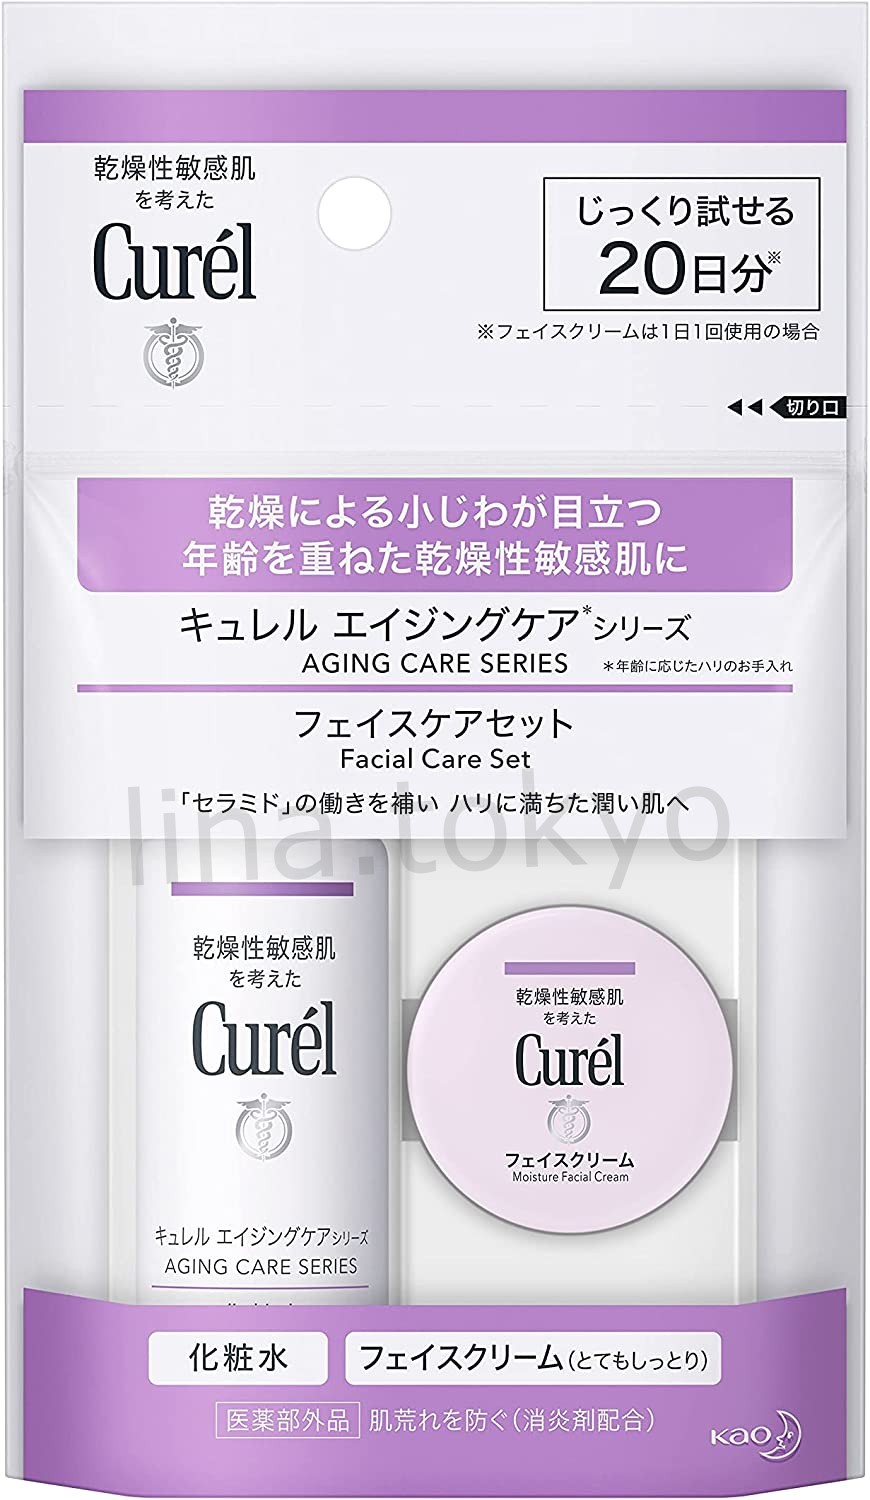 Bộ dưỡng da mini chống lão hóa da Nhật Bản Curél-Kao dưỡng ẩm, mịn da, chống lão hóa da cho làn da trẻ trung (Quasi-drug)(K1212)(Miễn phí giao hàng)